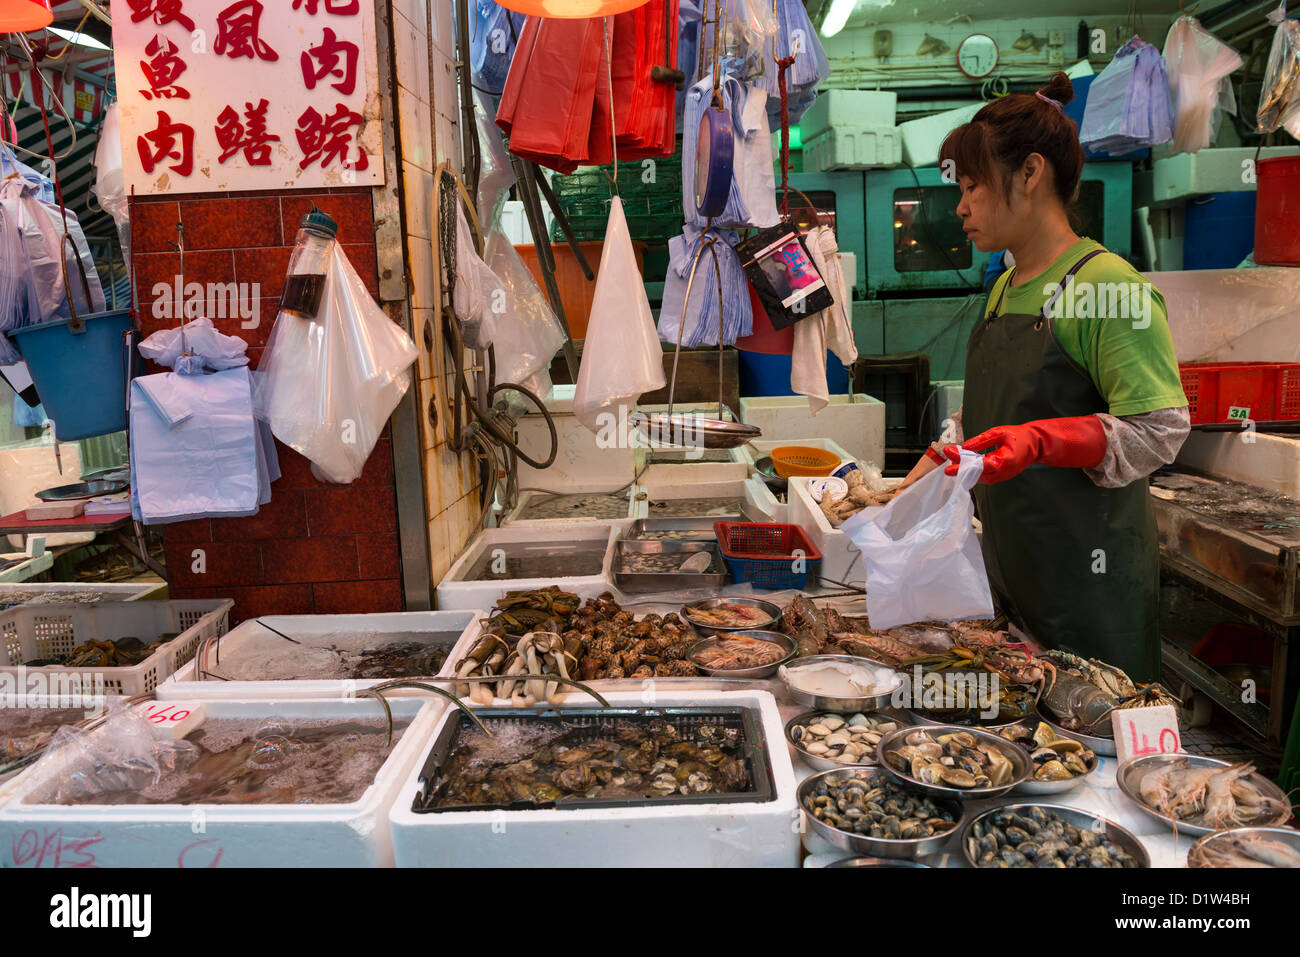 Poissons et fruits de mer frais Market Stall sur gage Street à Central, Hong Kong, Chine Banque D'Images